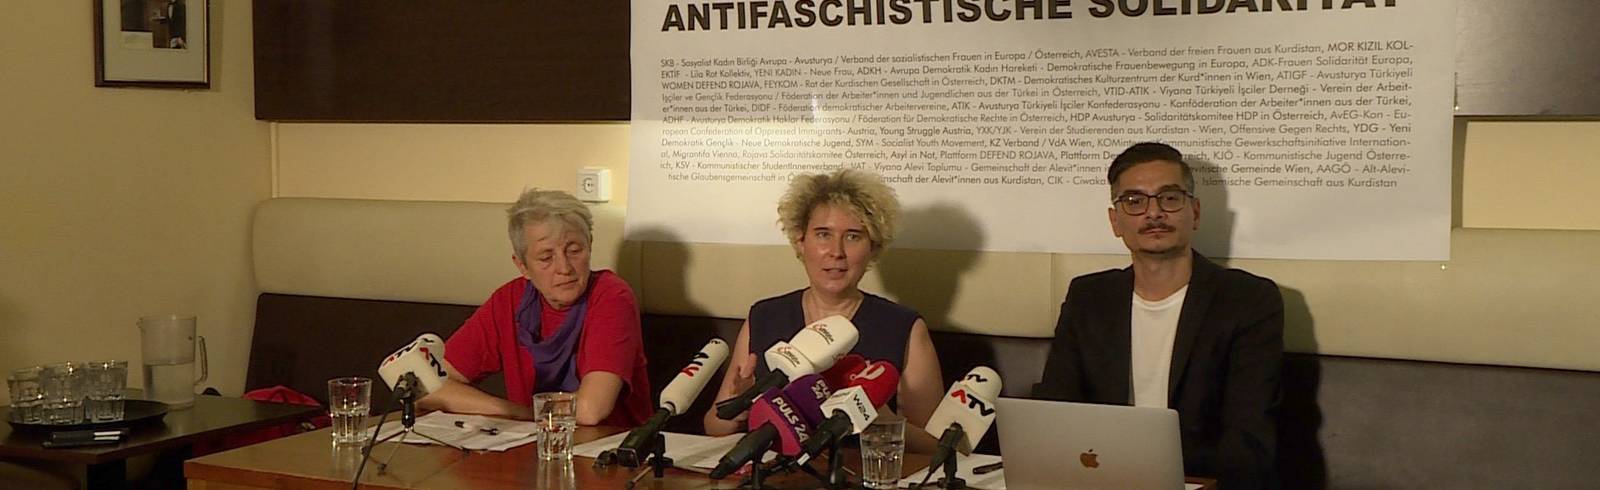 Demo-Bündnis: "Faschismus kennt keine Herkunft"